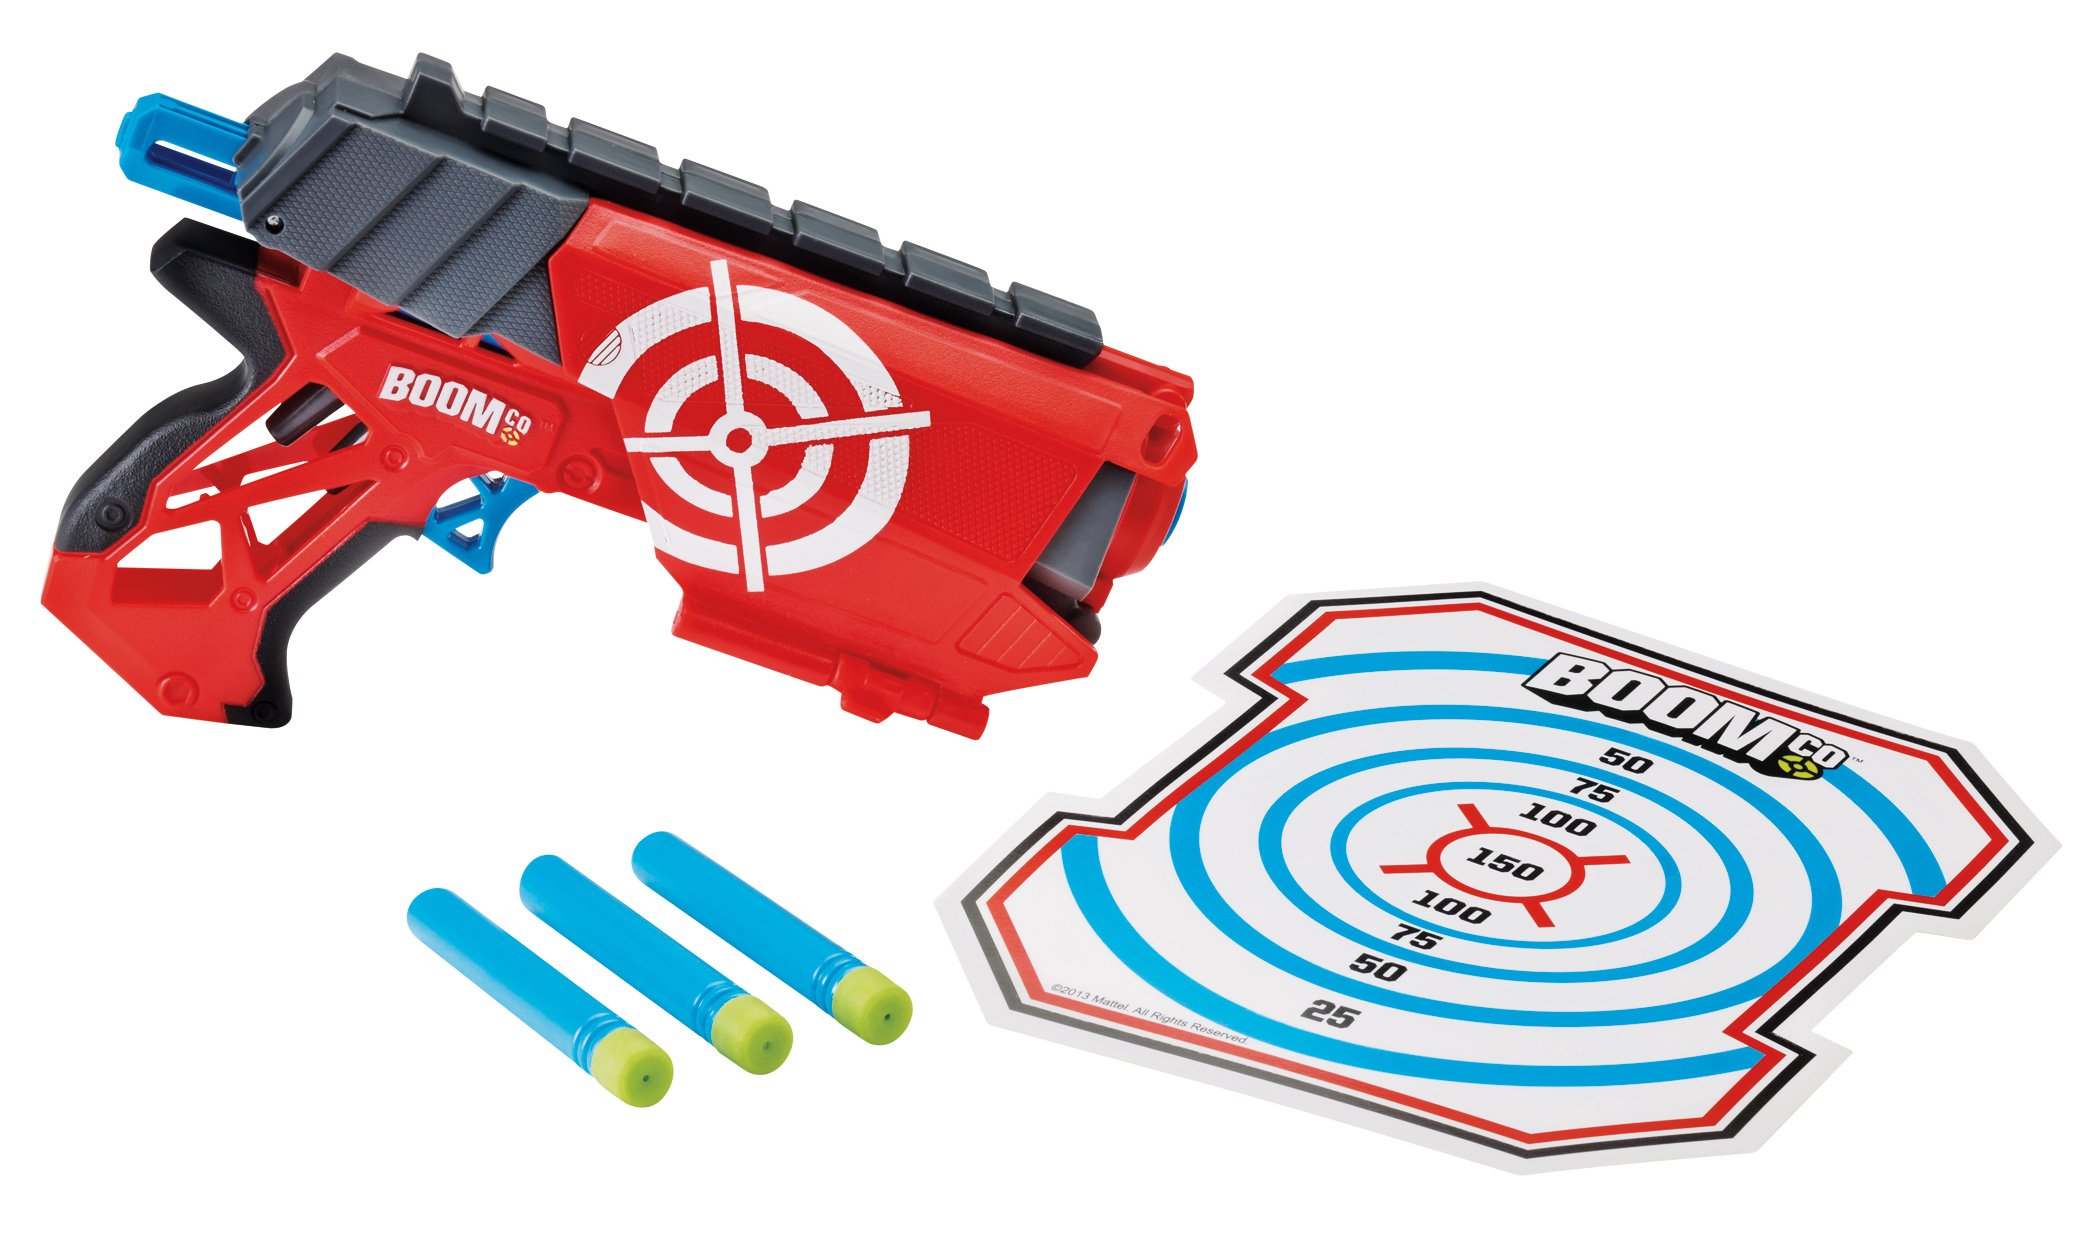 Persona a cargo sistemático agrio Mattel Boomco Farshot Blaster Gun - Shop at H-E-B